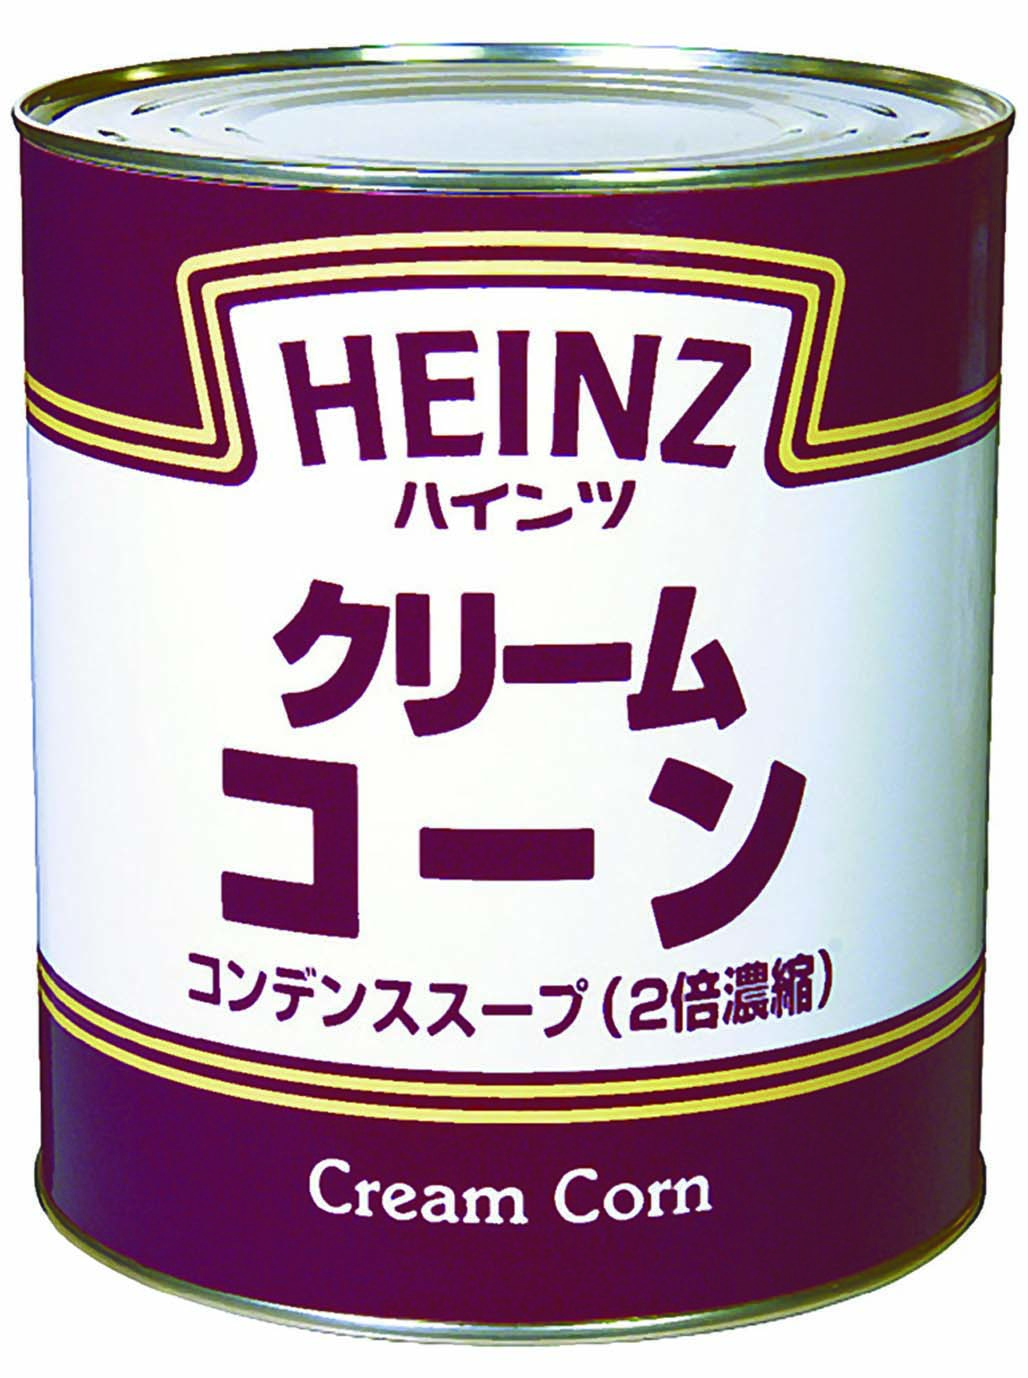 ハインツ コンデンススープ クリームコーン2号缶 業務用ネットスーパー 業務食材をネットで注文 宅配でお届け 東商マート